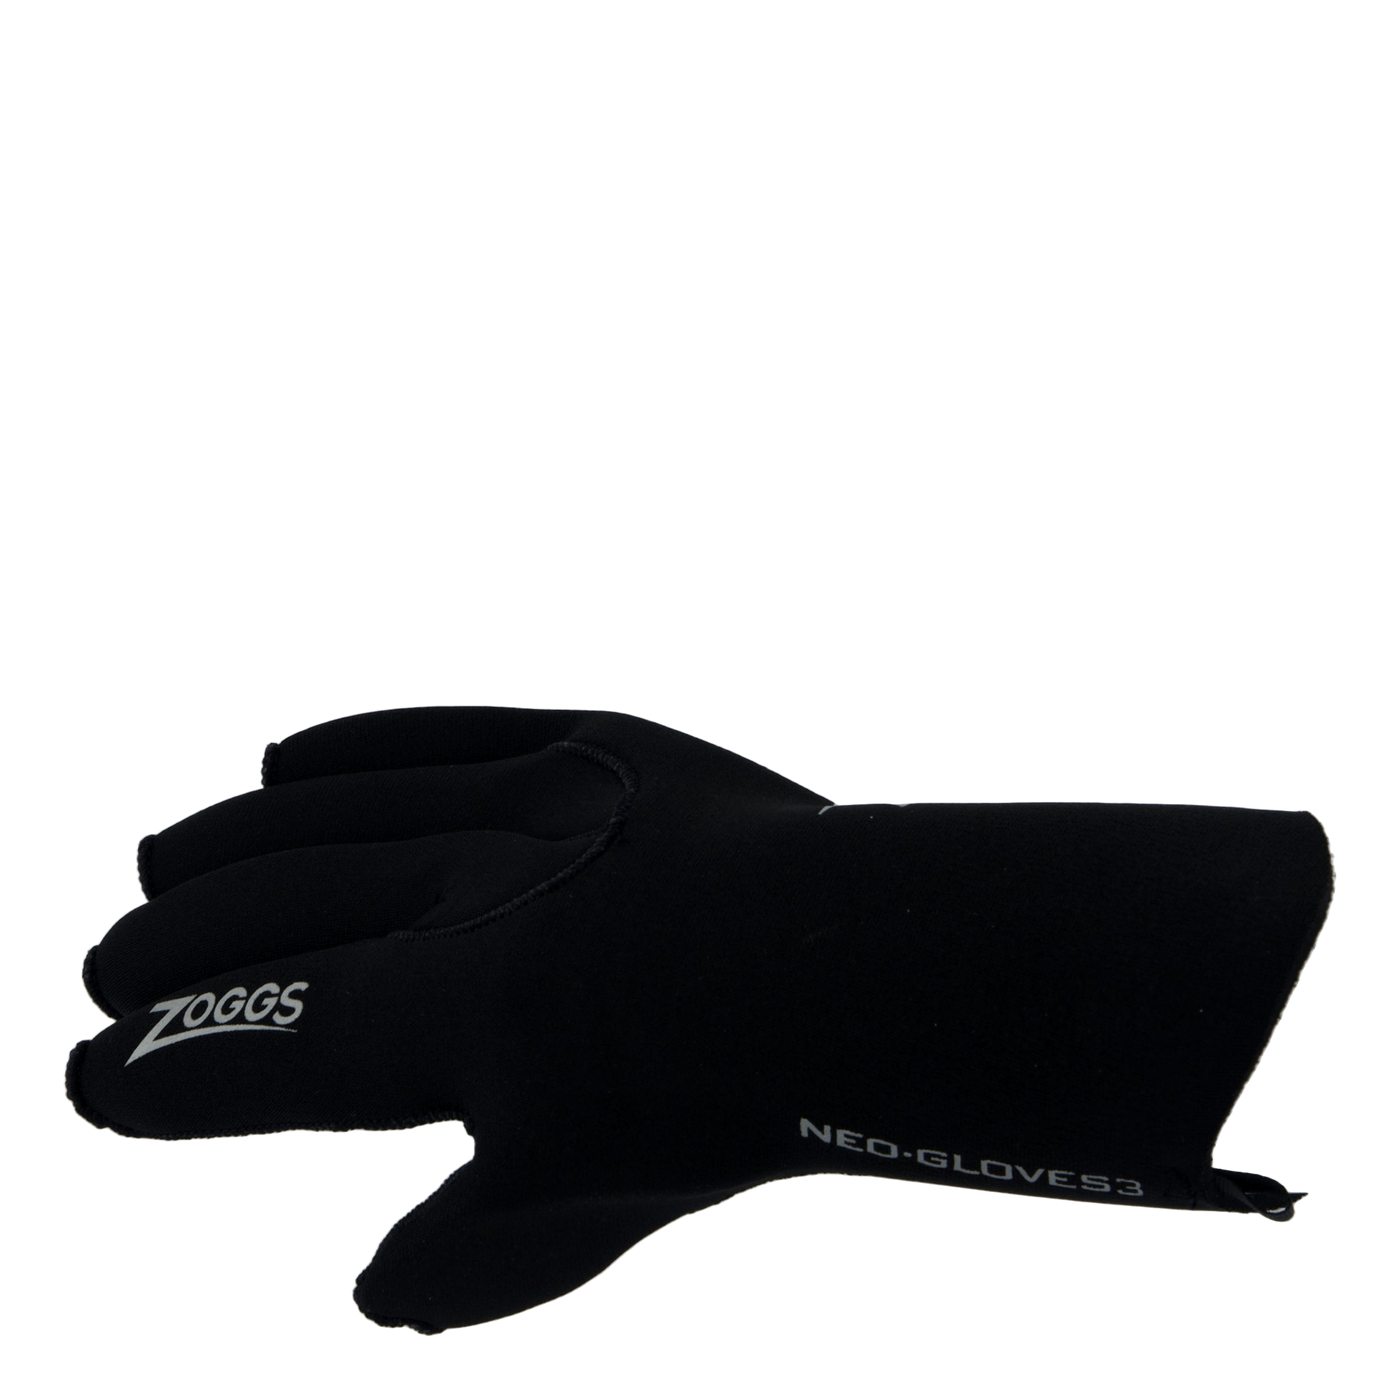 Neo Gloves 3mm Bk